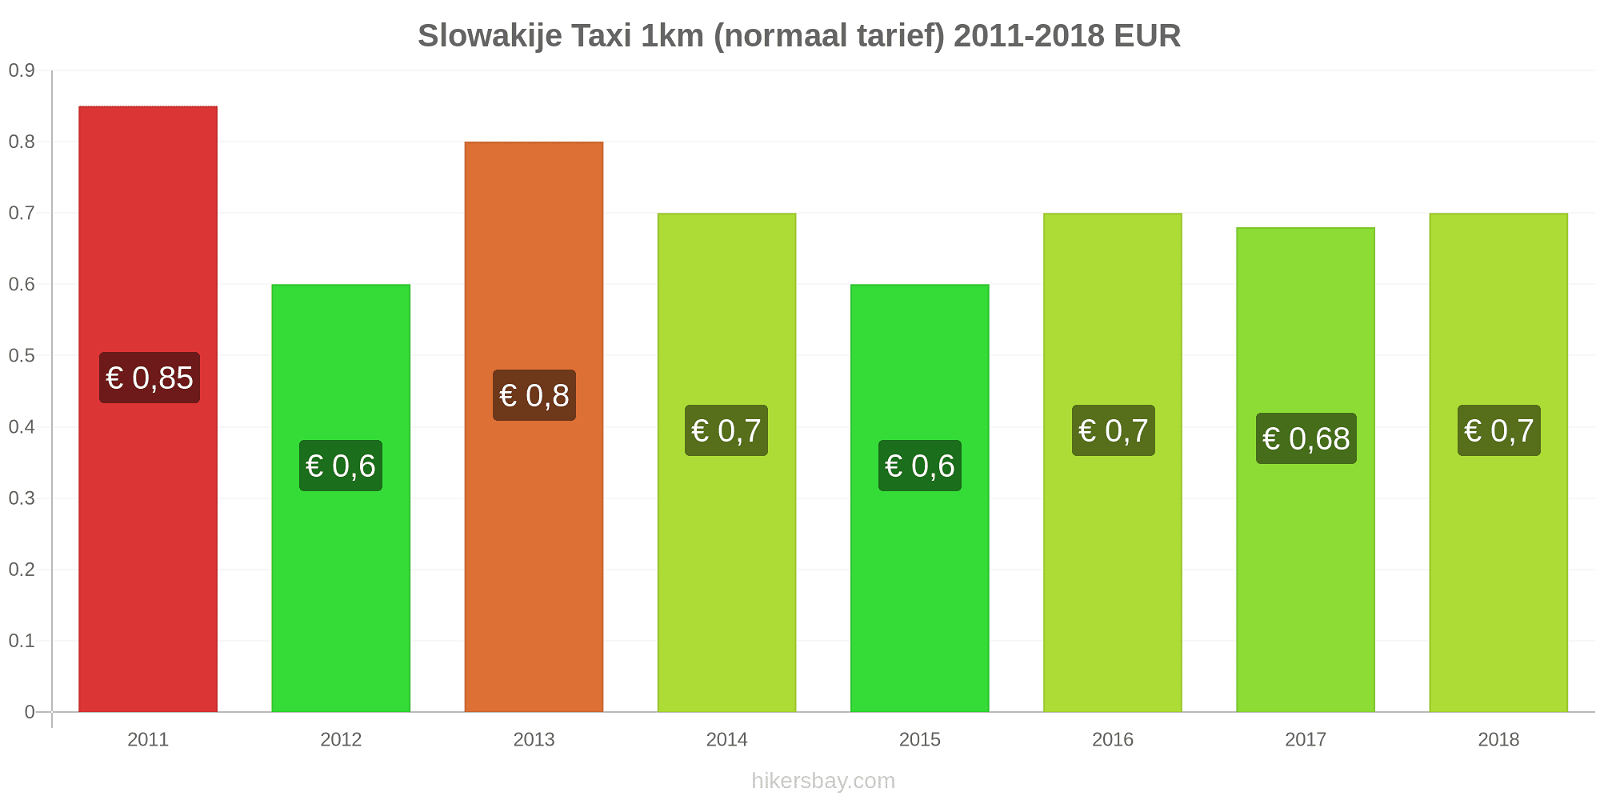 Slowakije prijswijzigingen Taxi 1km (normaal tarief) hikersbay.com